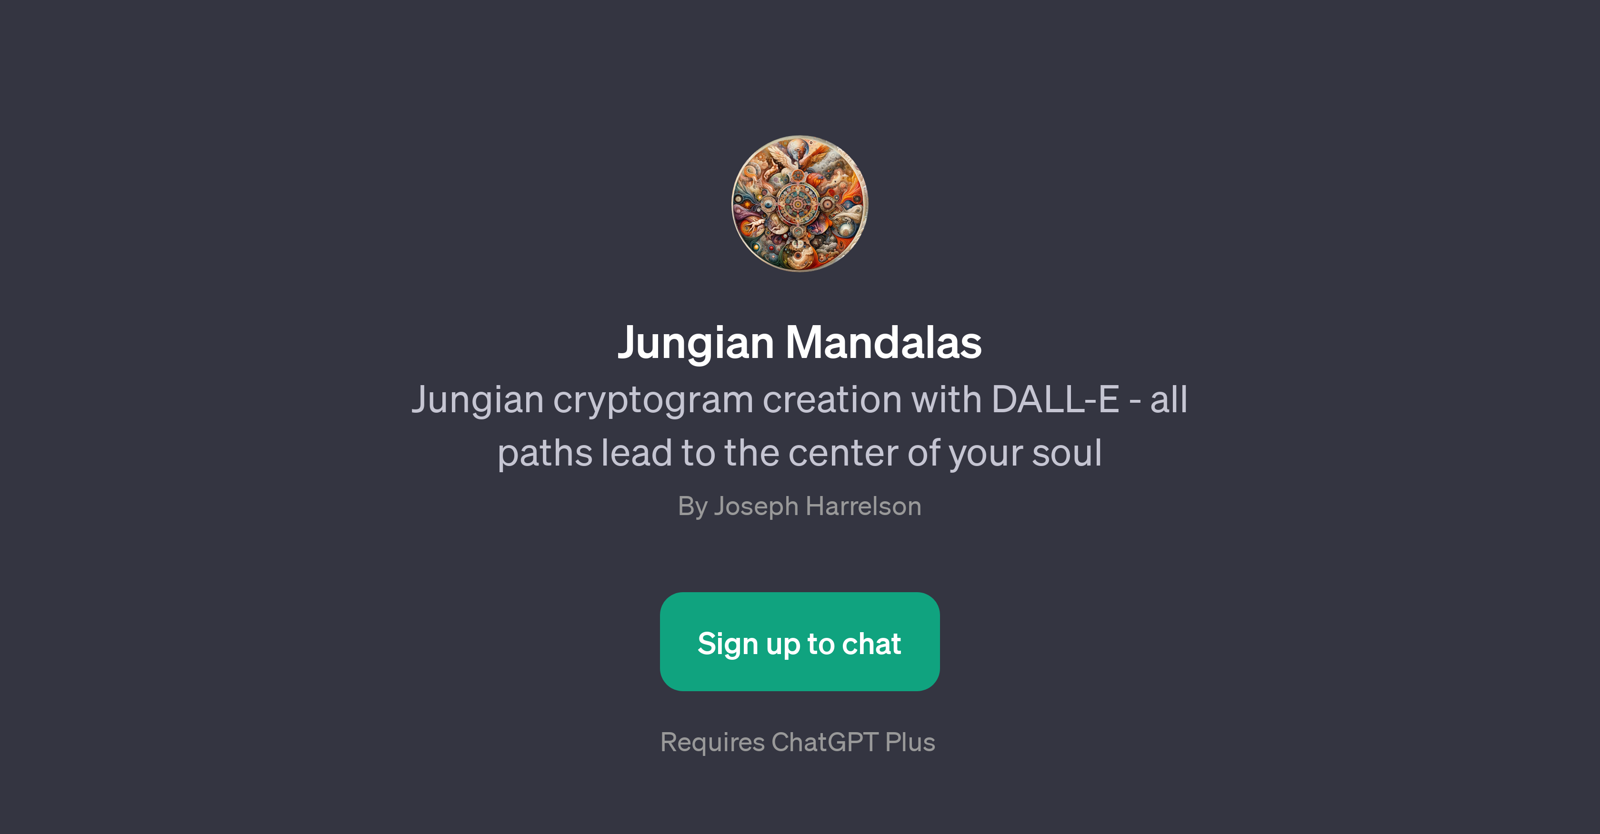 Jungian Mandalas website